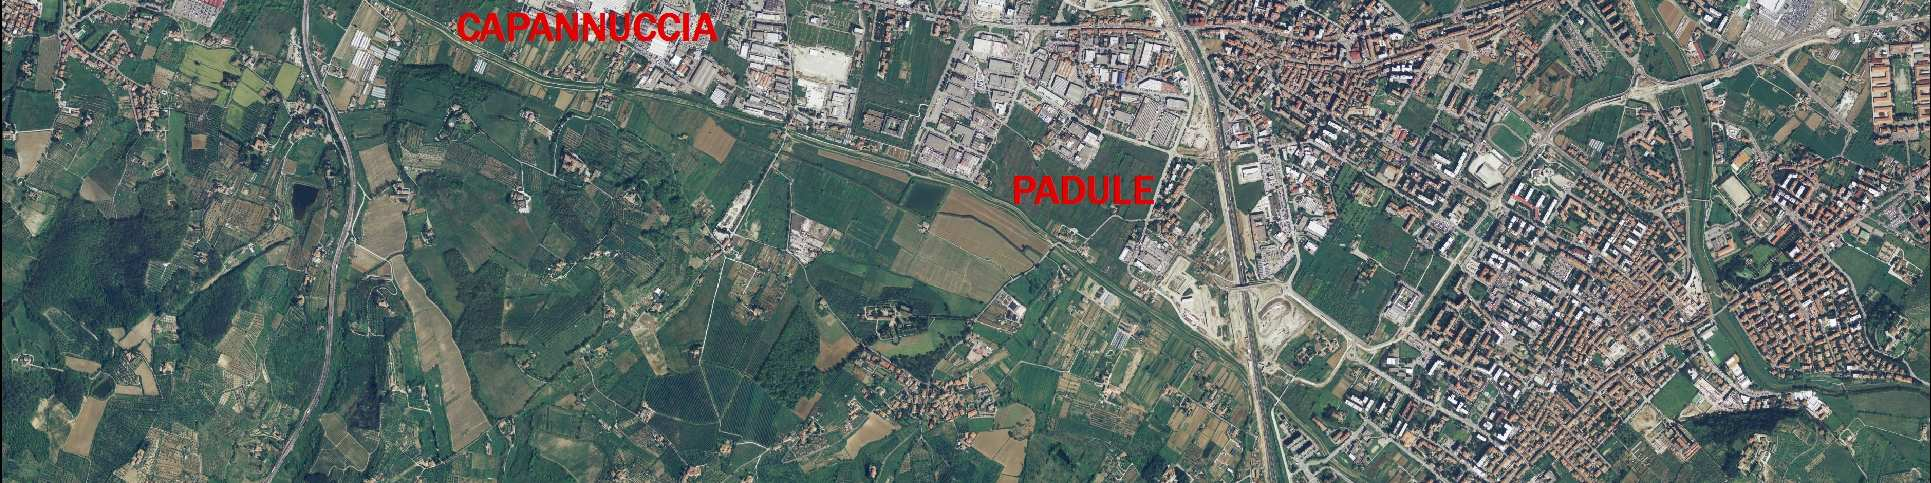 Viottolone Via Pisana (settori prevalenti: moda, metalmeccanica; caratterizzata dalla presenza dello stabilimento Ex Electrolux); - zona I Pratoni